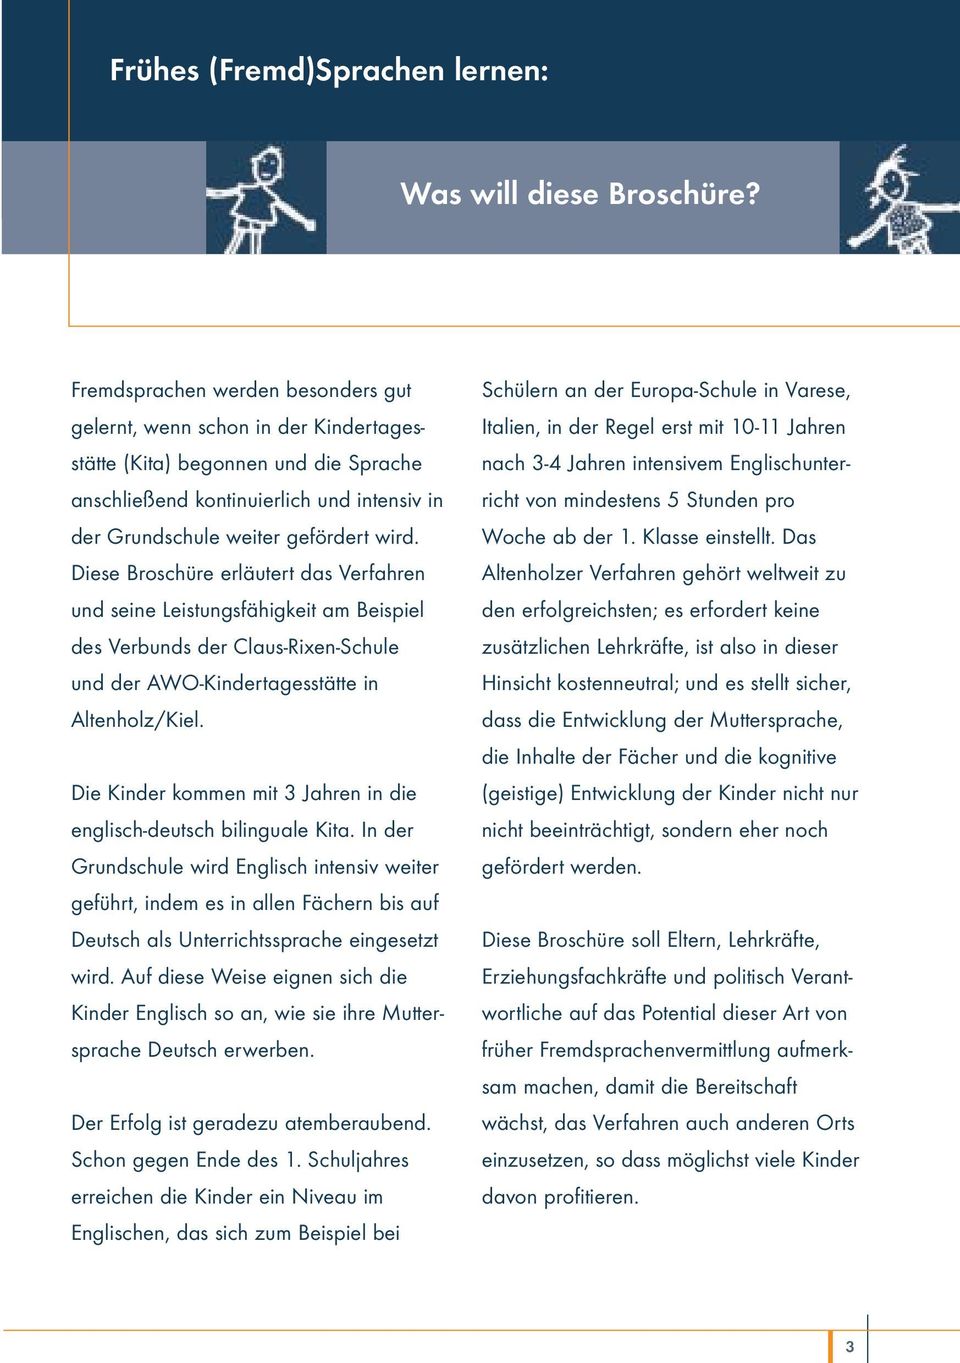 Diese Broschüre erläutert das Verfahren und seine Leistungsfähigkeit am Beispiel des Verbunds der Claus-Rixen-Schule und der AWO-Kindertagesstätte in Altenholz/Kiel.